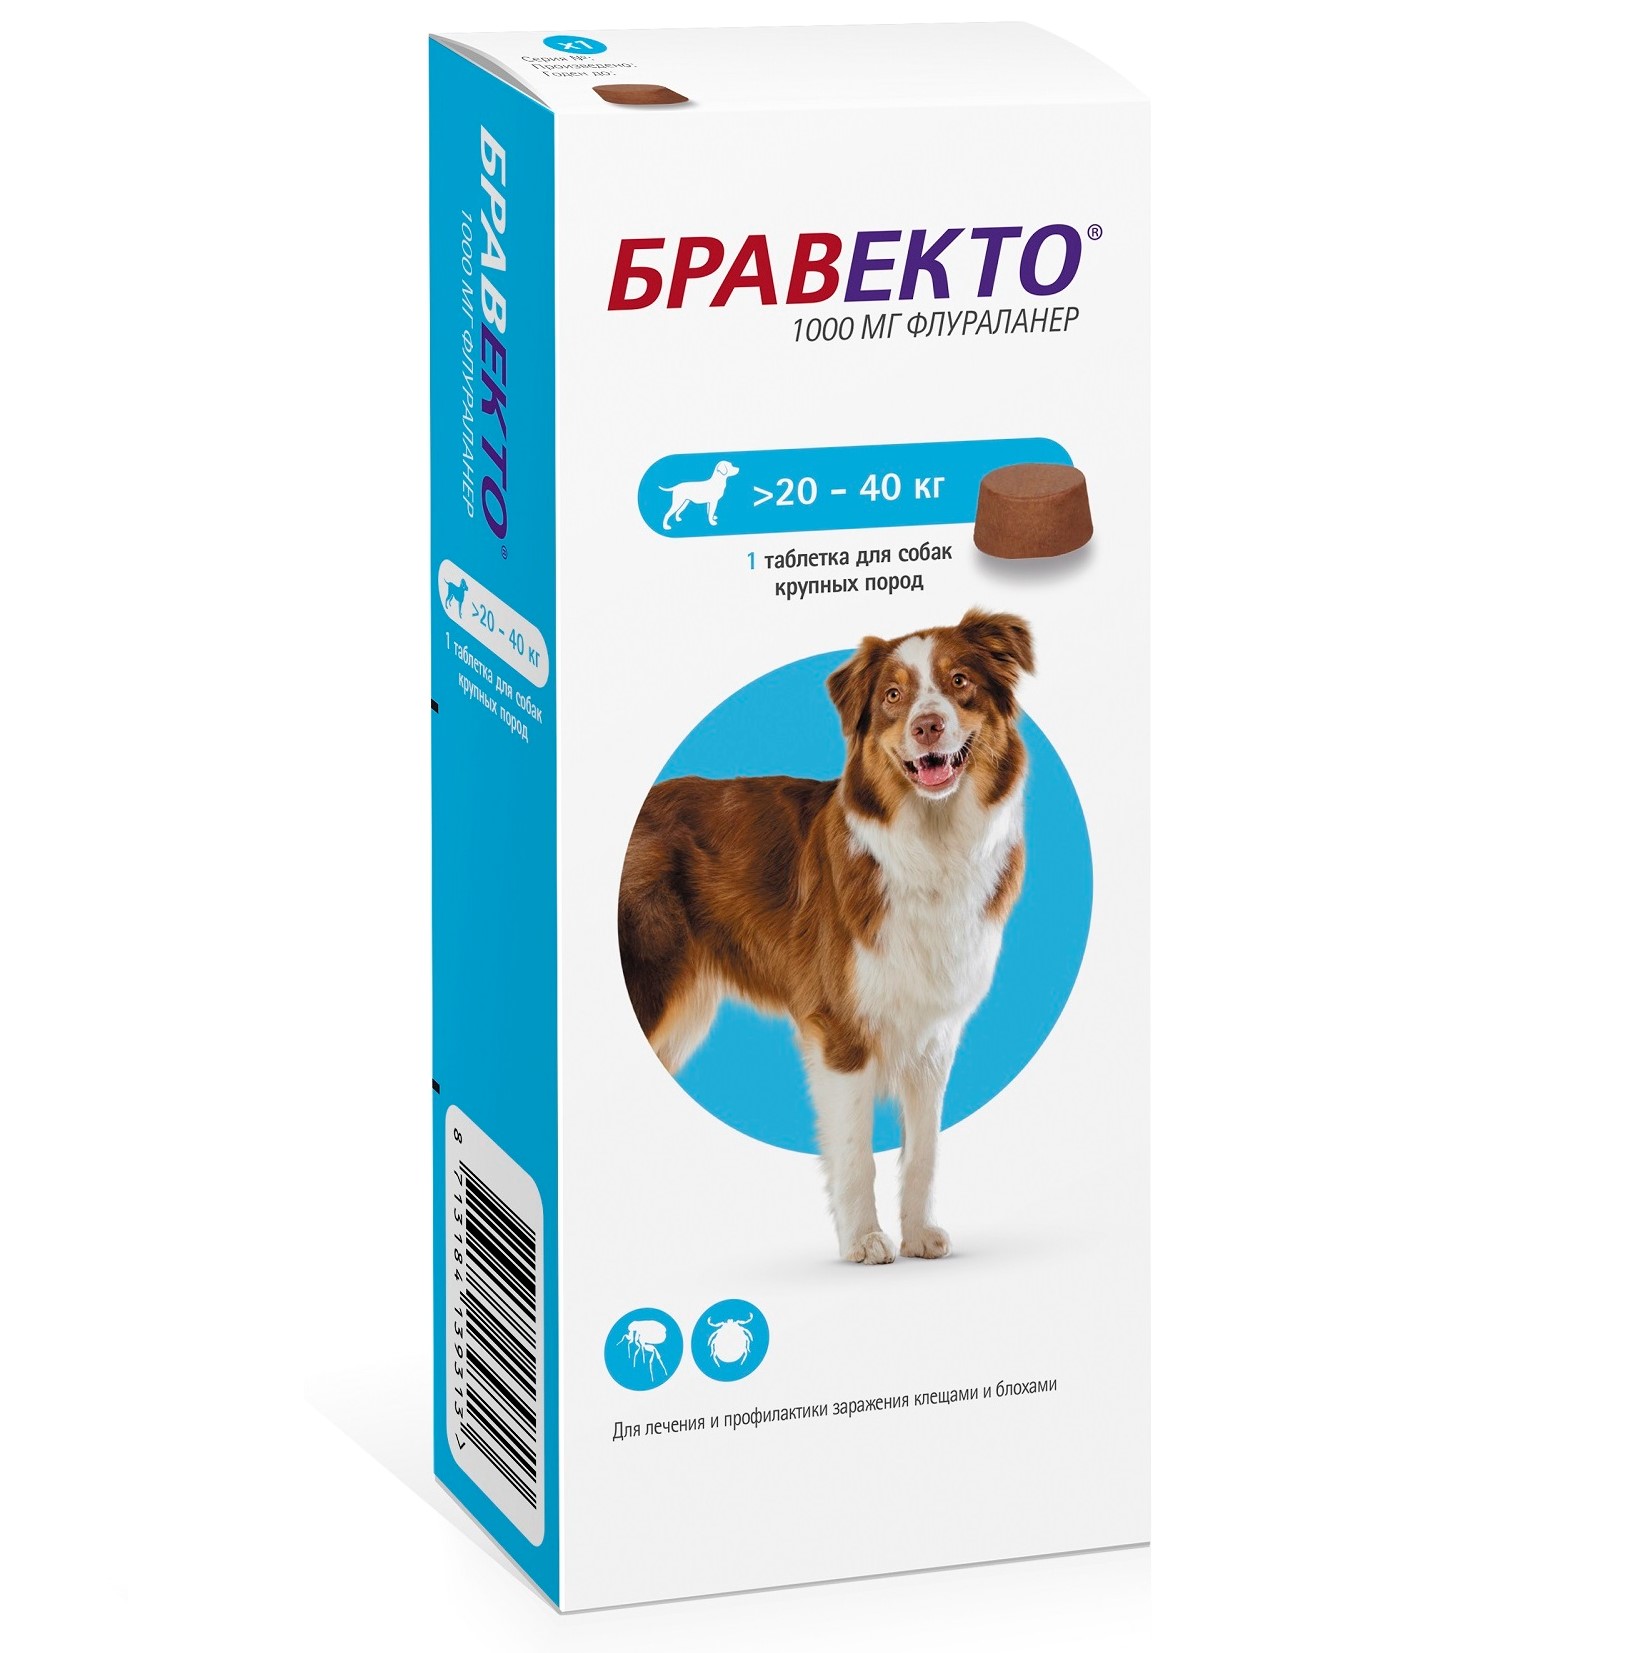 Бравекто Таблетки от блох и клещей для собак весом от 20 до 40 кг , 1 таблетка